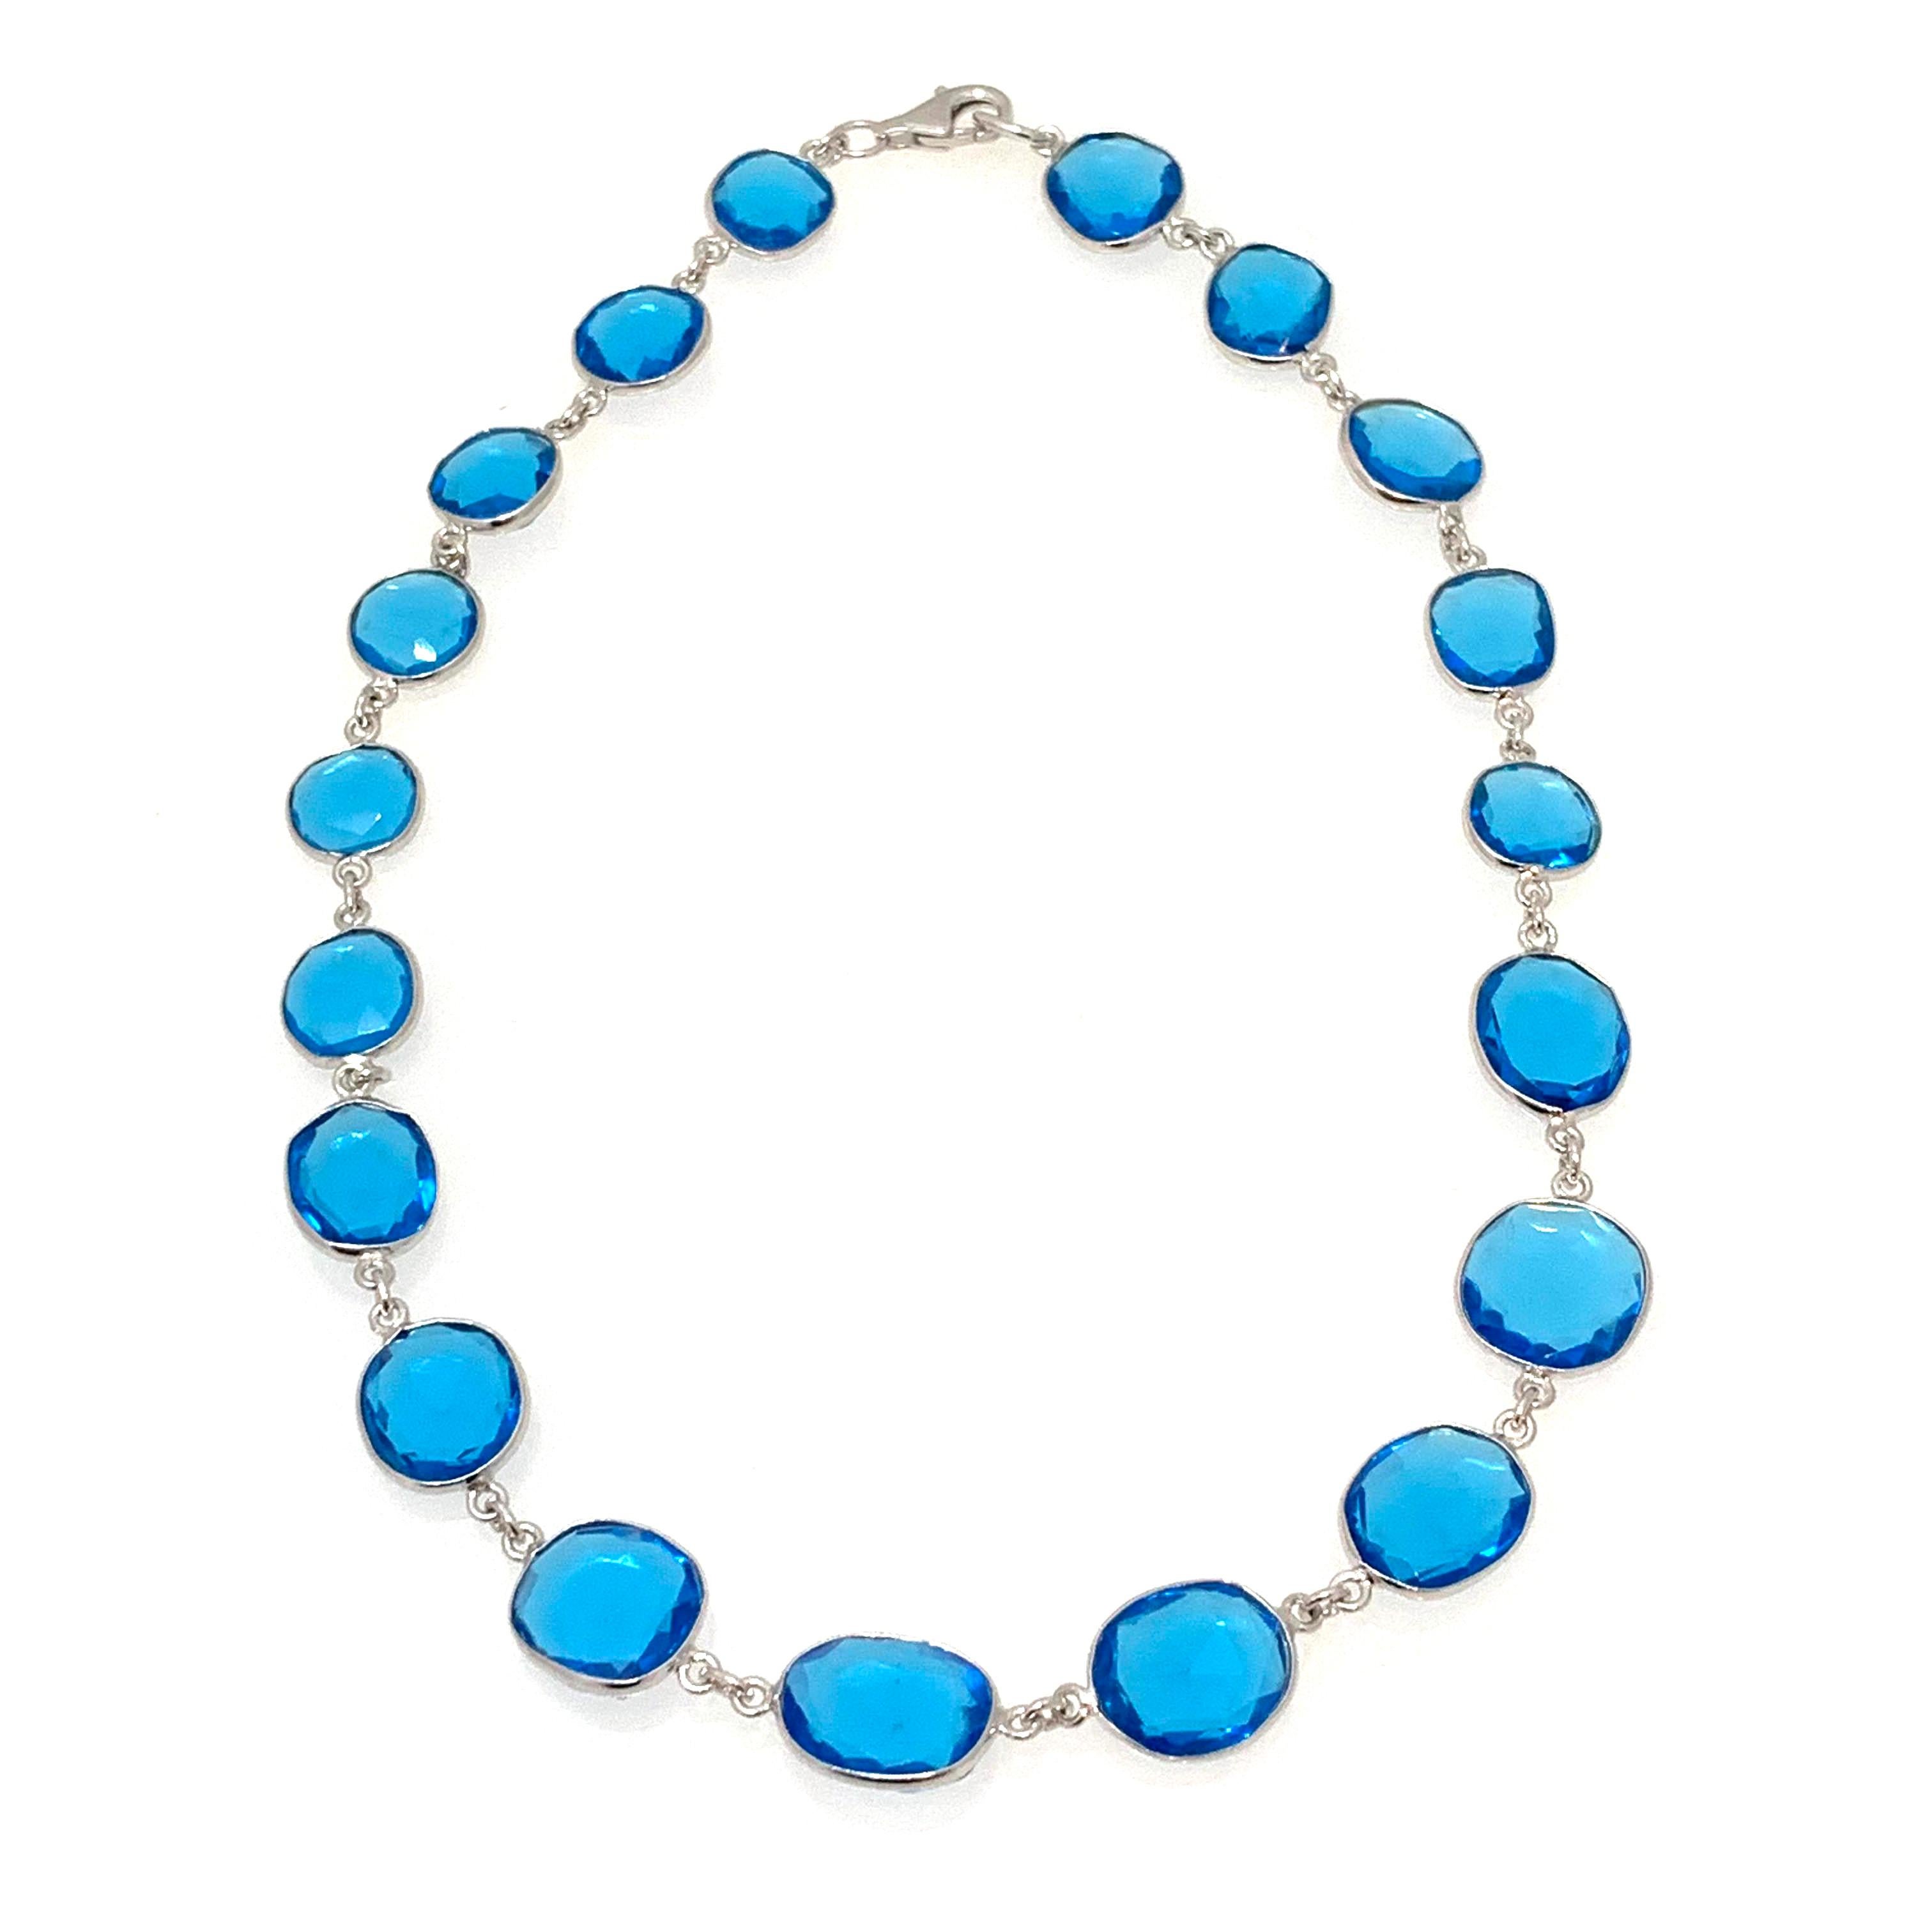 Sehen Sie sich diese atemberaubende Schweizer Blauquarz-Sterlingsilber-Halskette an!

Diese elegante Halskette besteht aus 19 Stück Schweizer Blauhydroquarz mit Rosenschliff in einzigartiger Form. Jedes Stück misst 12-13 mm (1/2